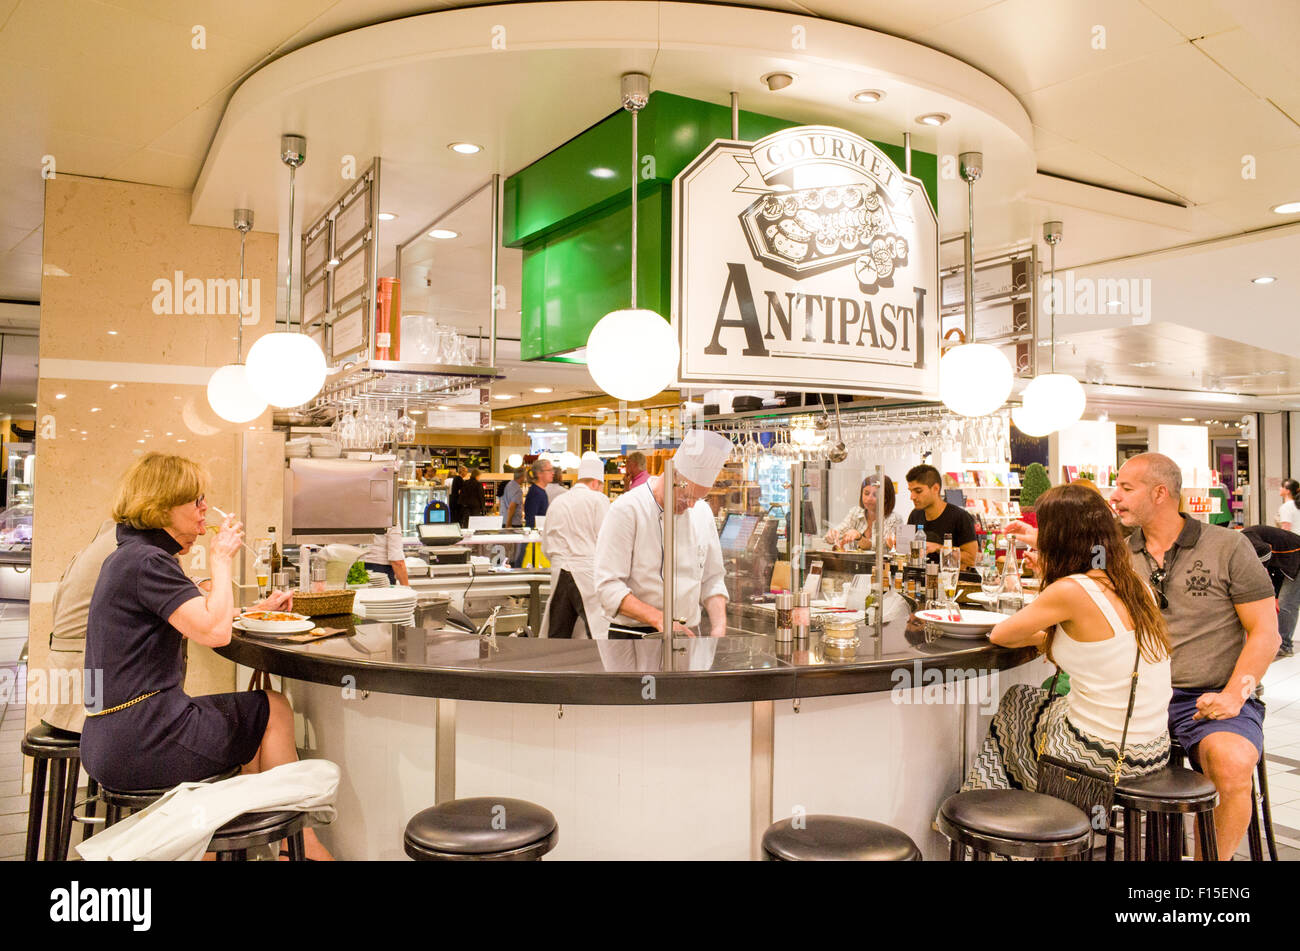 Antipasti-Restaurant-Bar auf der Gourmet-Etage des KaDeWe Kaufhaus, Berlin, Deutschland Stockfoto